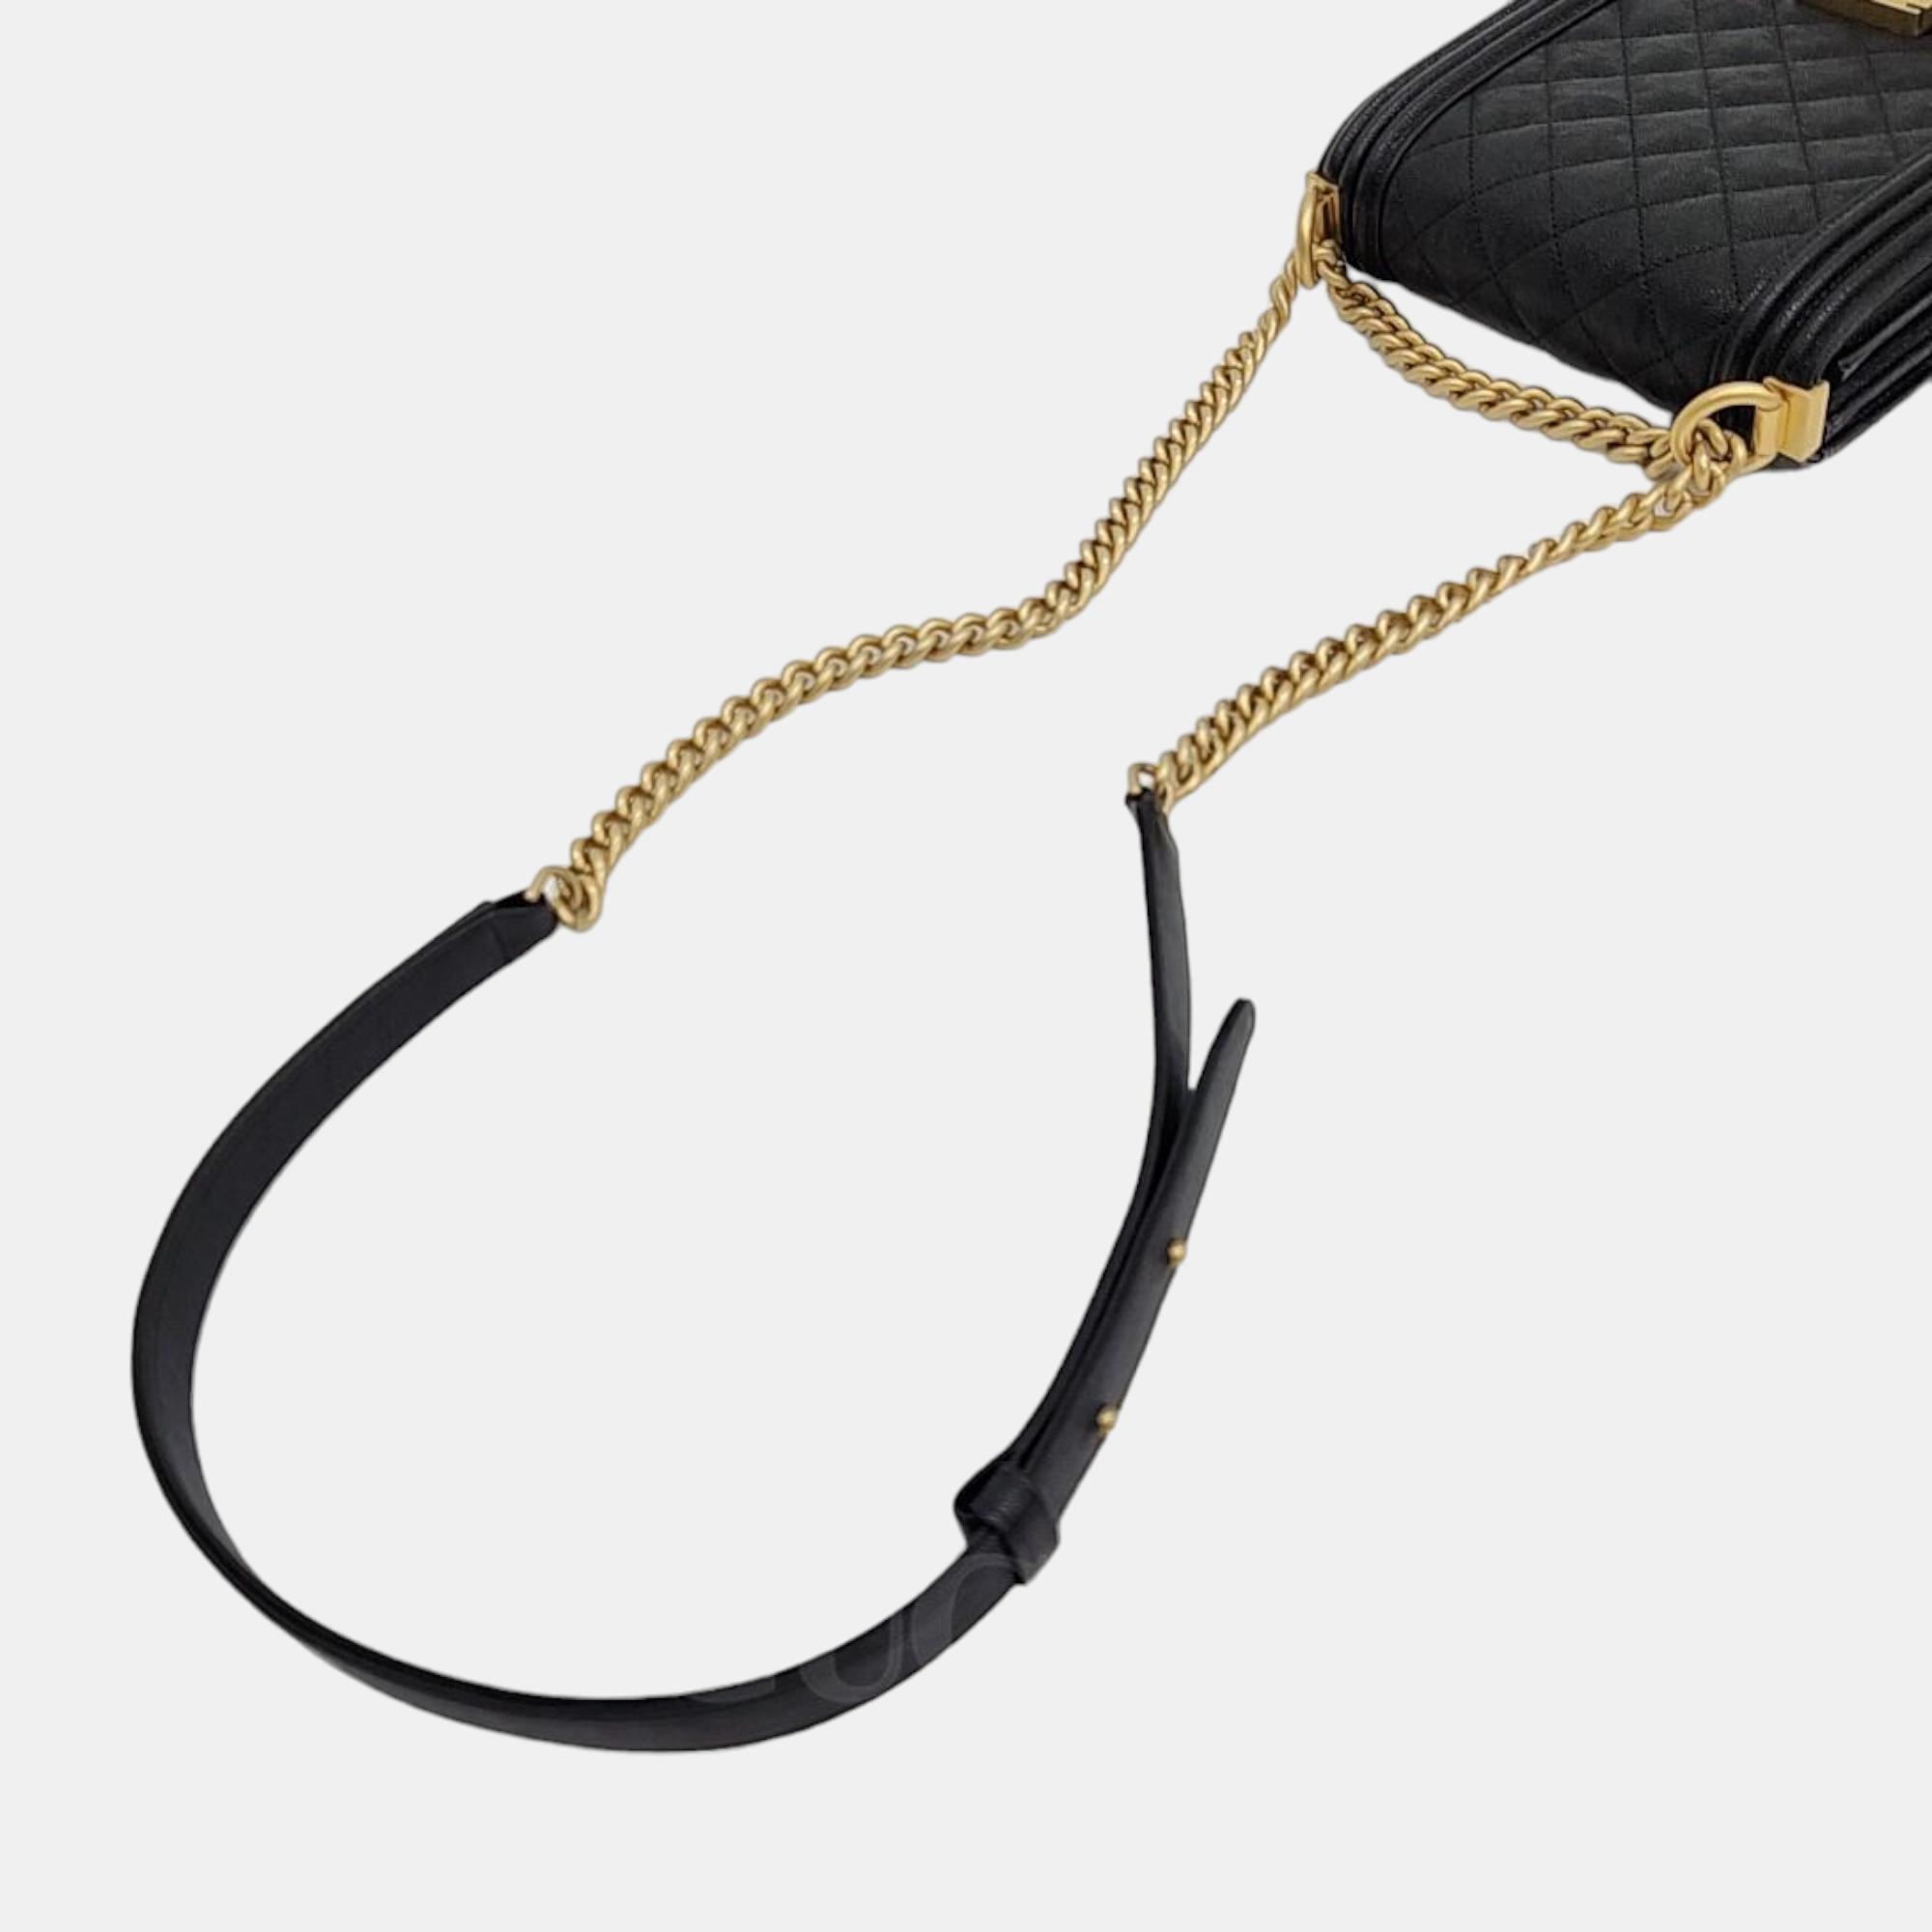 Chanel Caviar Boy Flap Bag